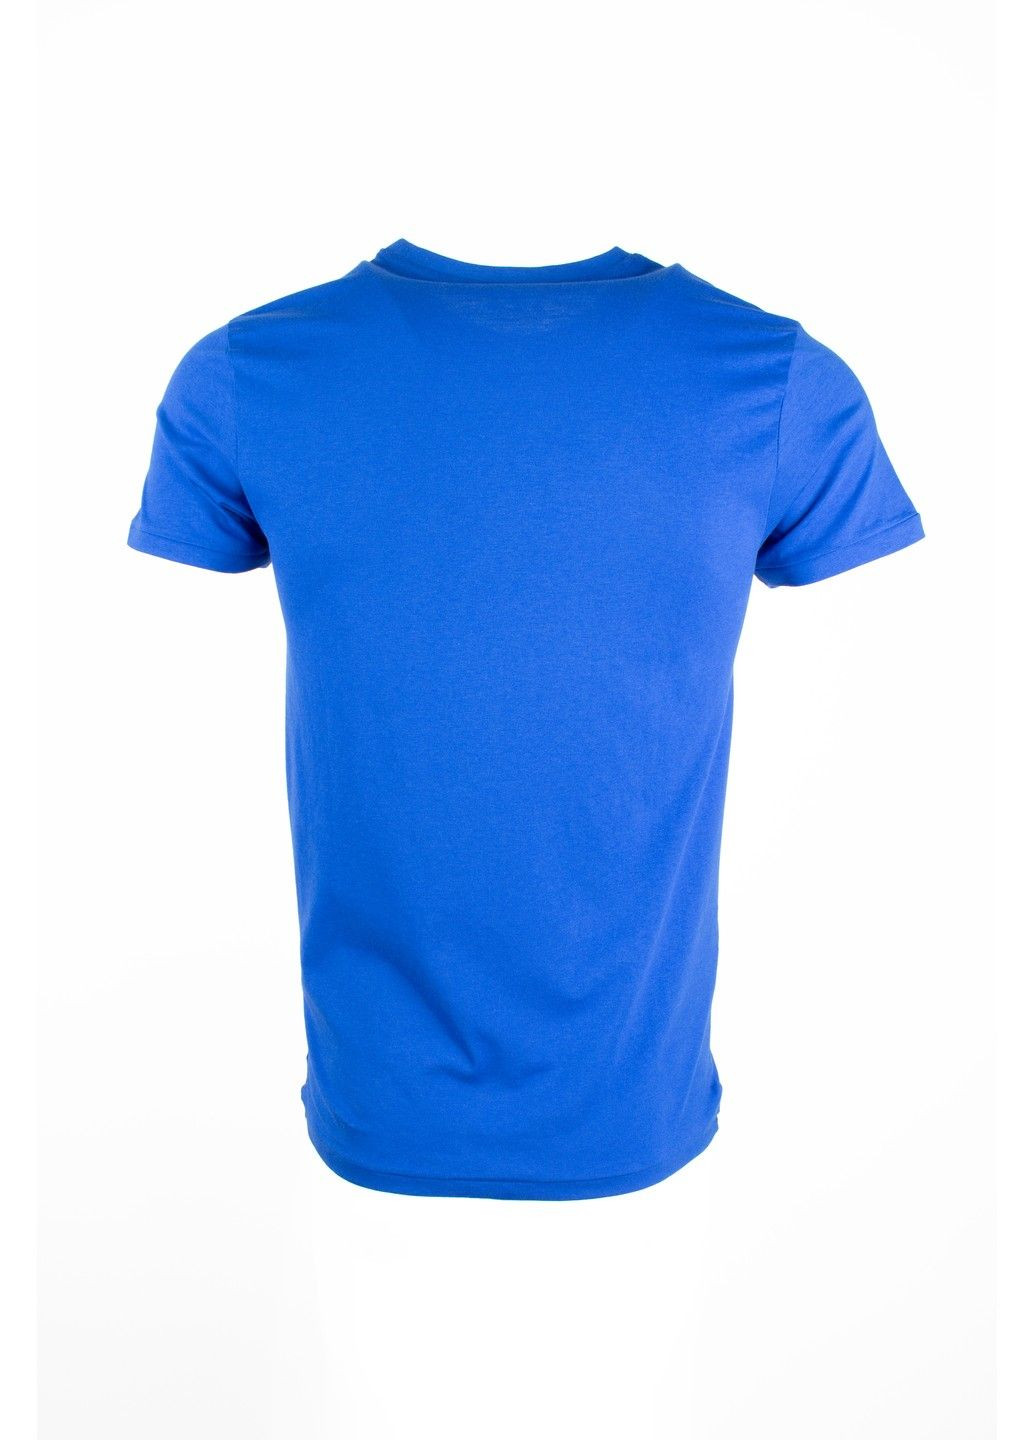 Синя футболка чоловіча top look синя 070821-001482 No Brand